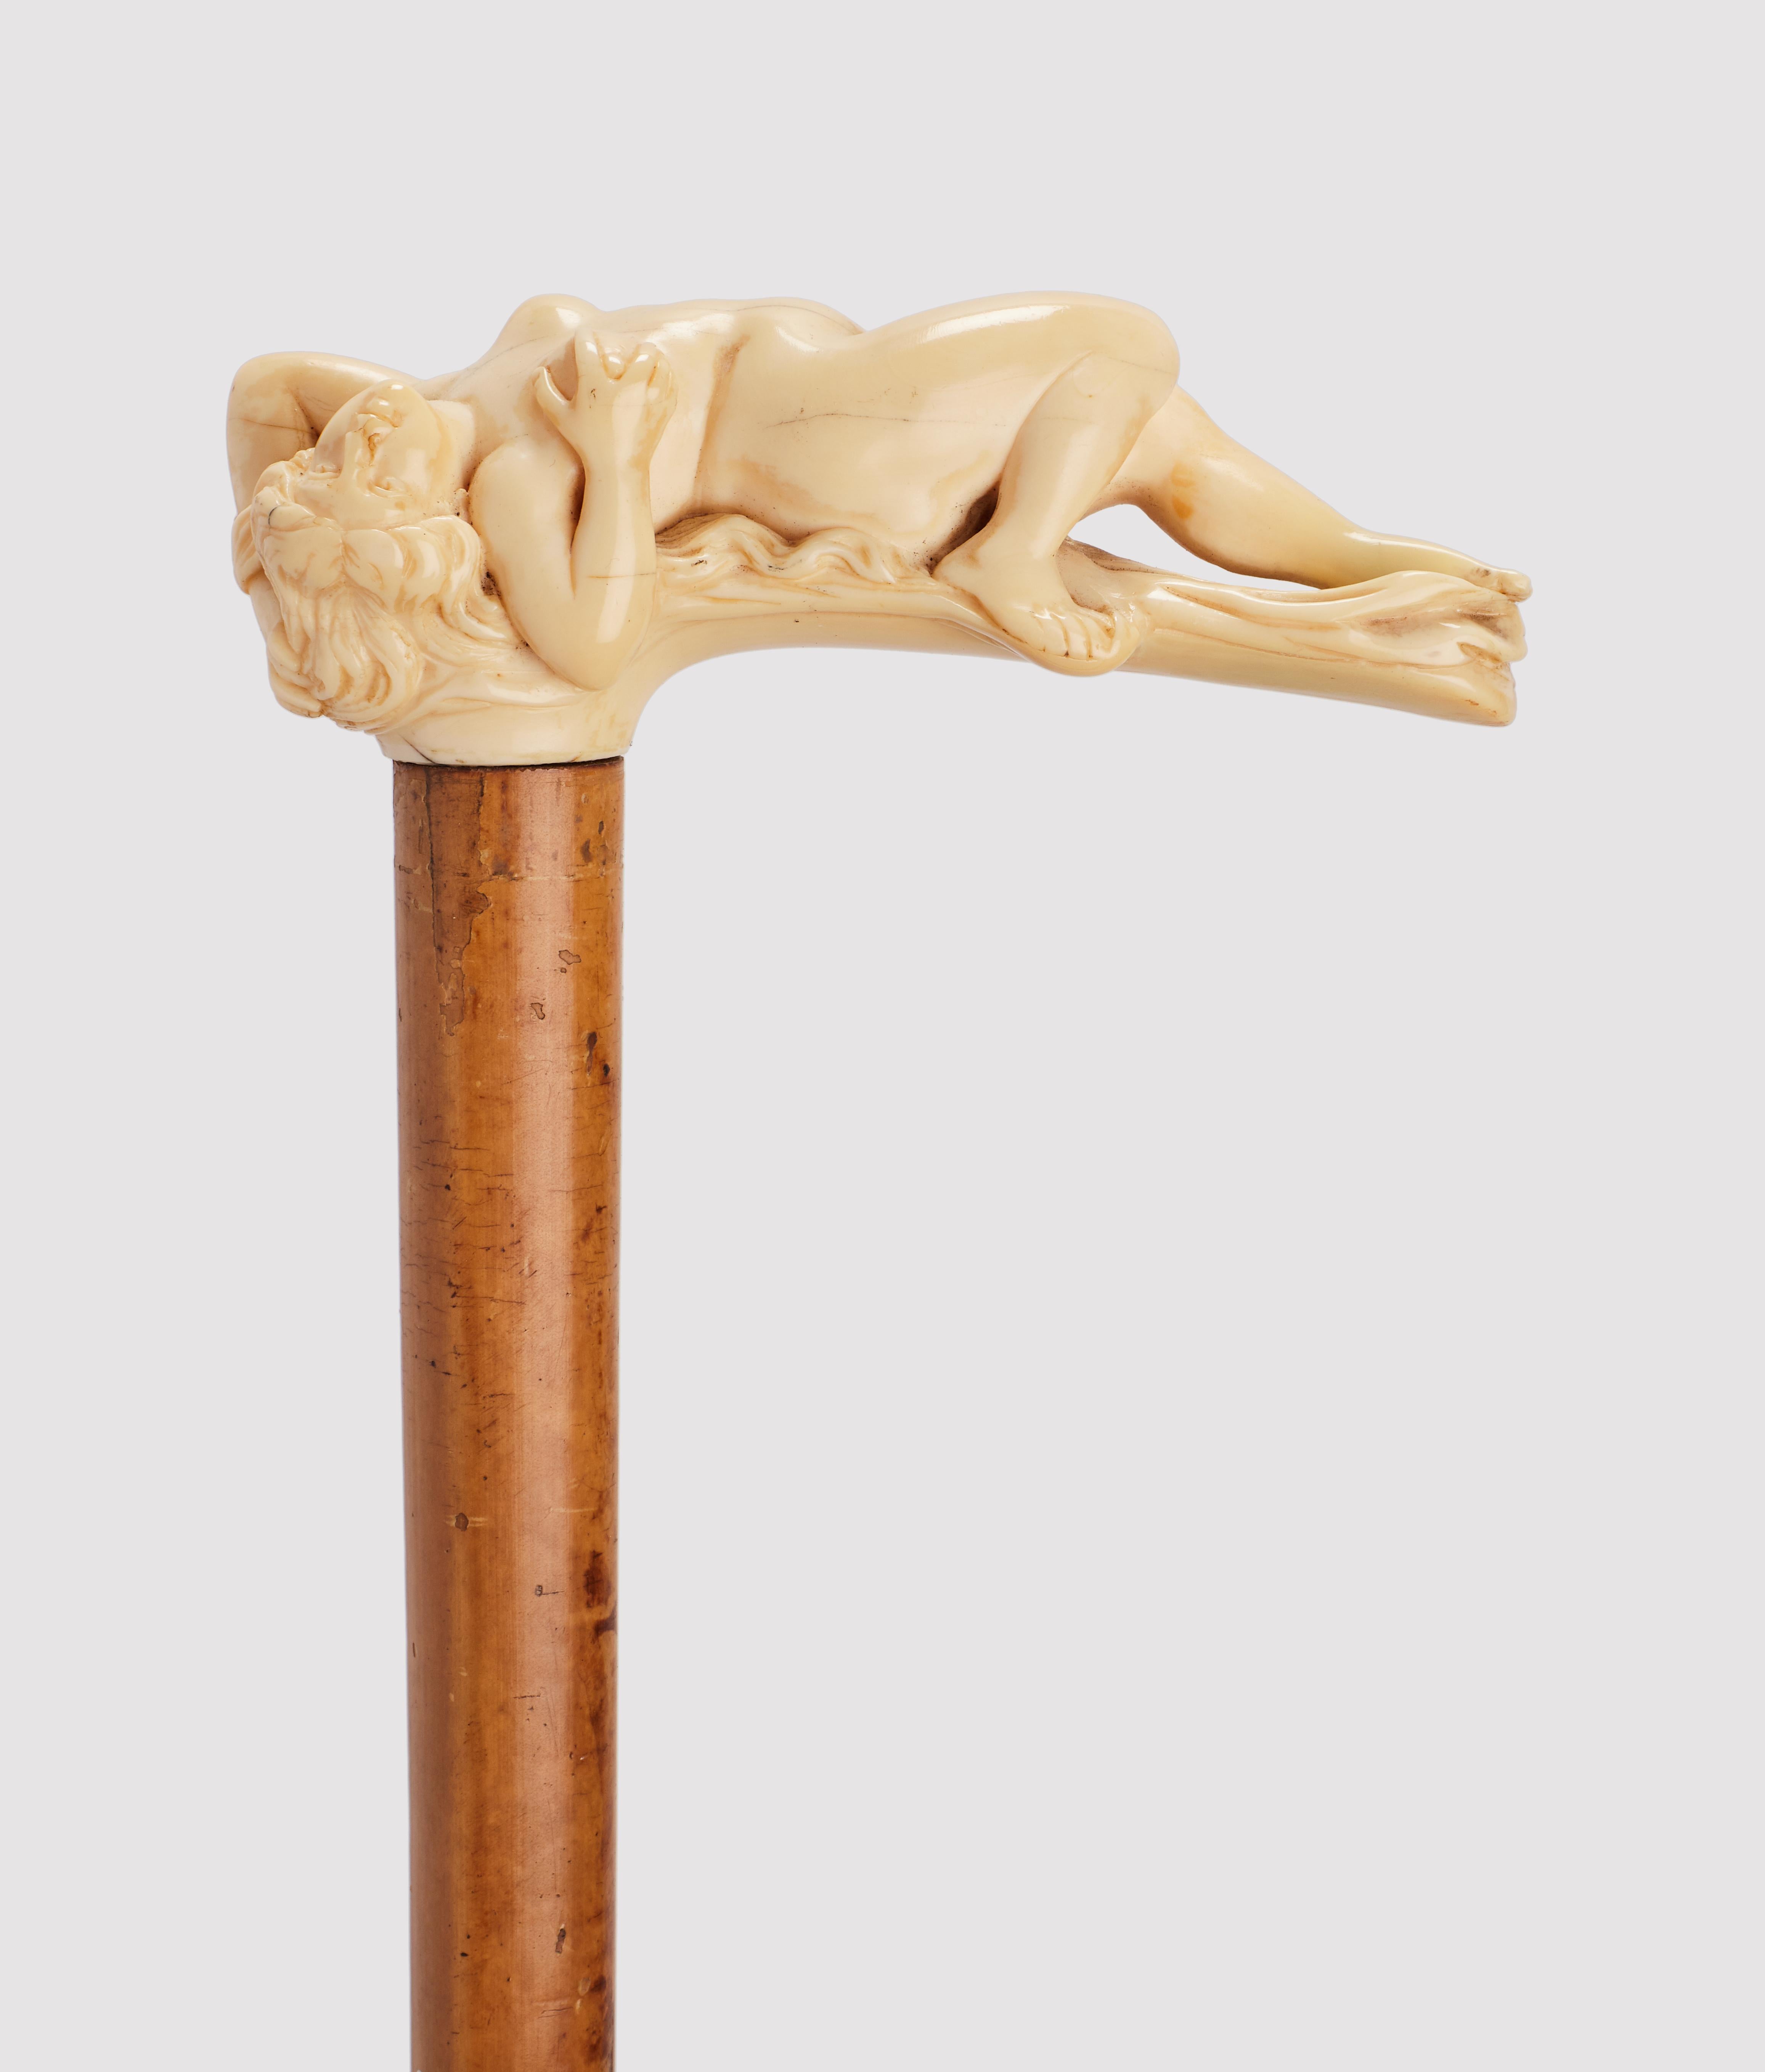 Canne : grand manche en ivoire sculpté. Canne Art Nouveau finement sculptée, elle représente une femme nue allongée. Arbre en bois de Malacca. Virole en corne. France vers 1900. (LIVRAISON DANS L'UE UNIQUEMENT)